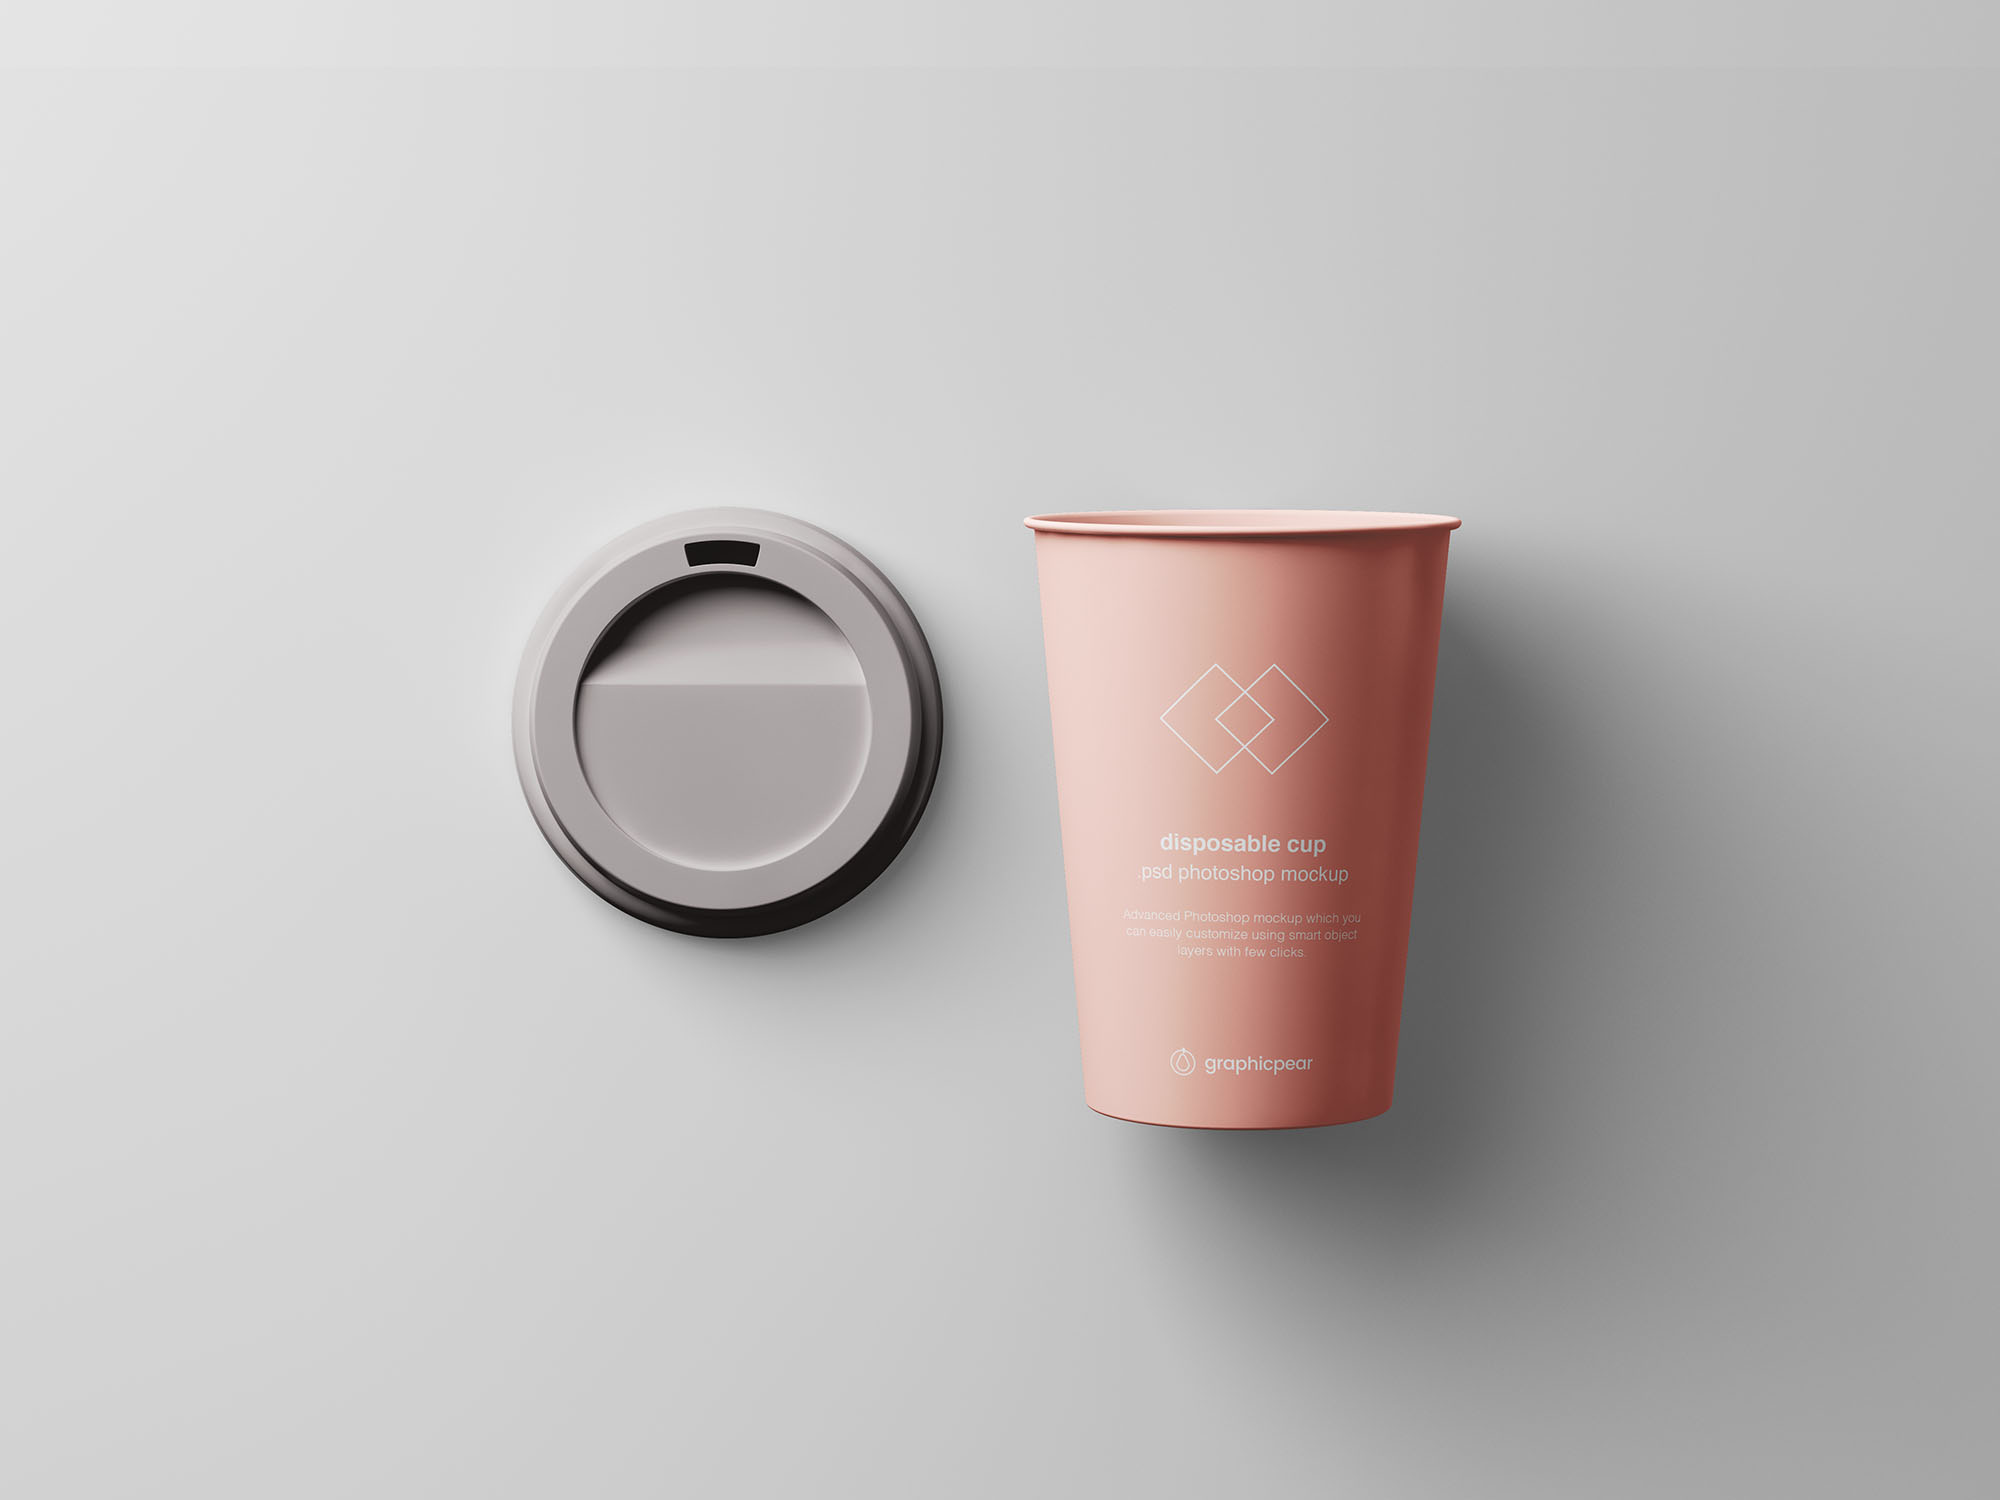 7个咖啡纸杯定制外观设计效果图样机模板 7 Coffee Cup Mockups插图(6)